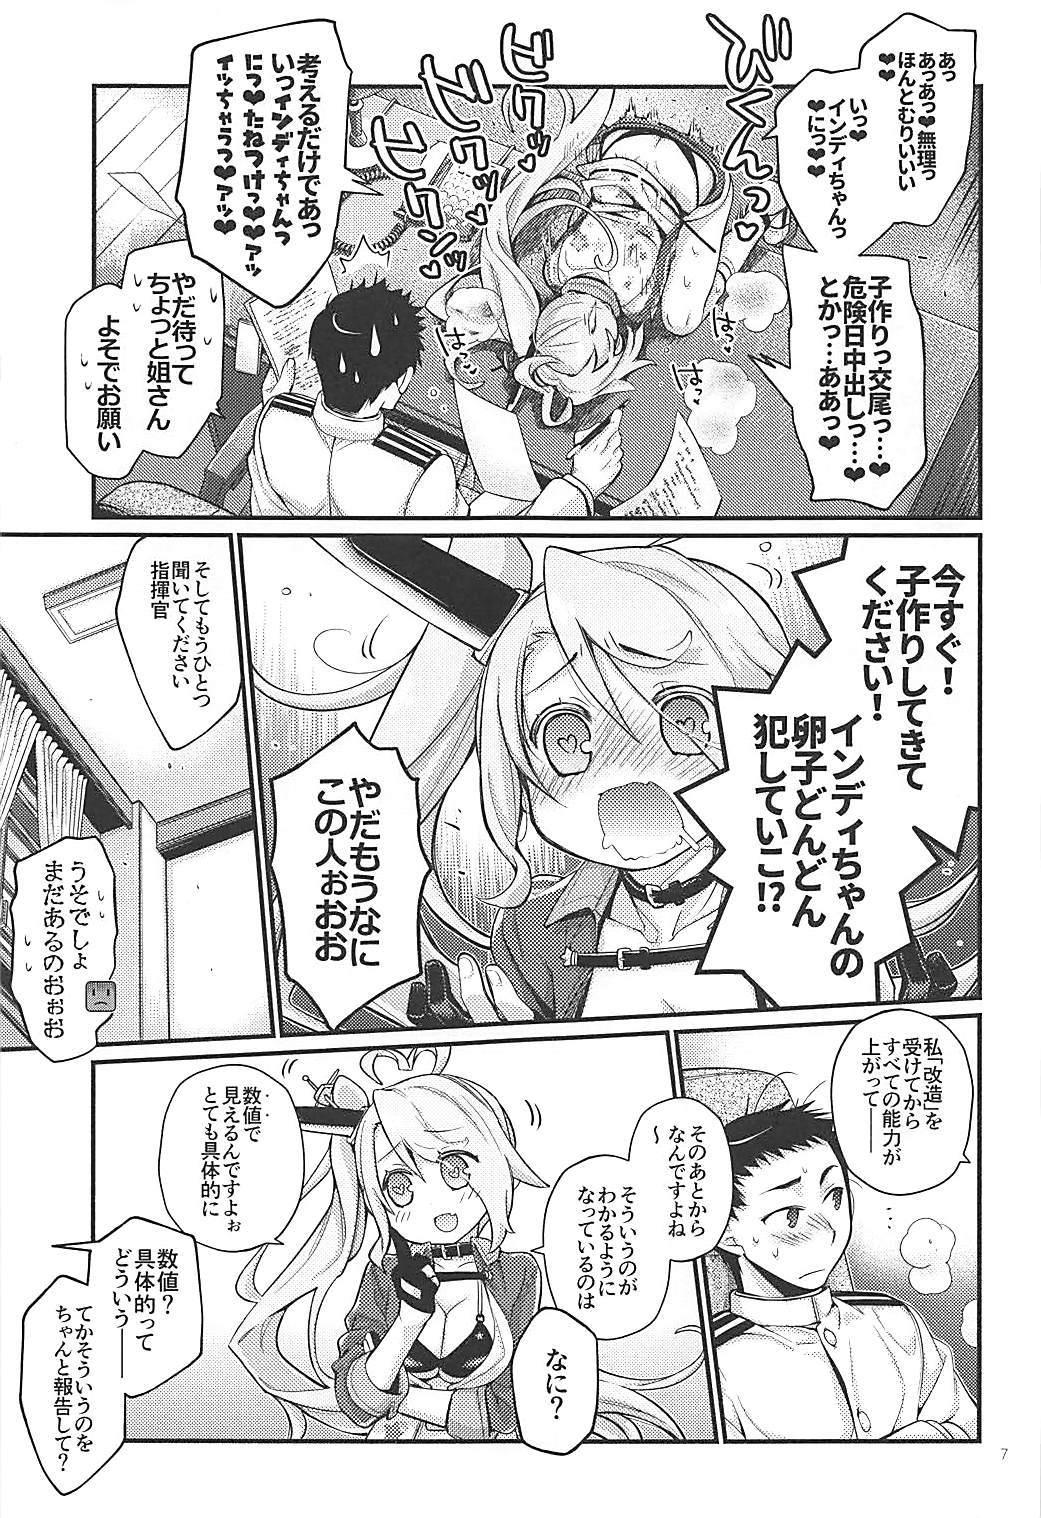 Finger Uchi no Imouto wa Sekaiichi Kawaiin desu kedo! 2 - Azur lane Lovers - Page 6